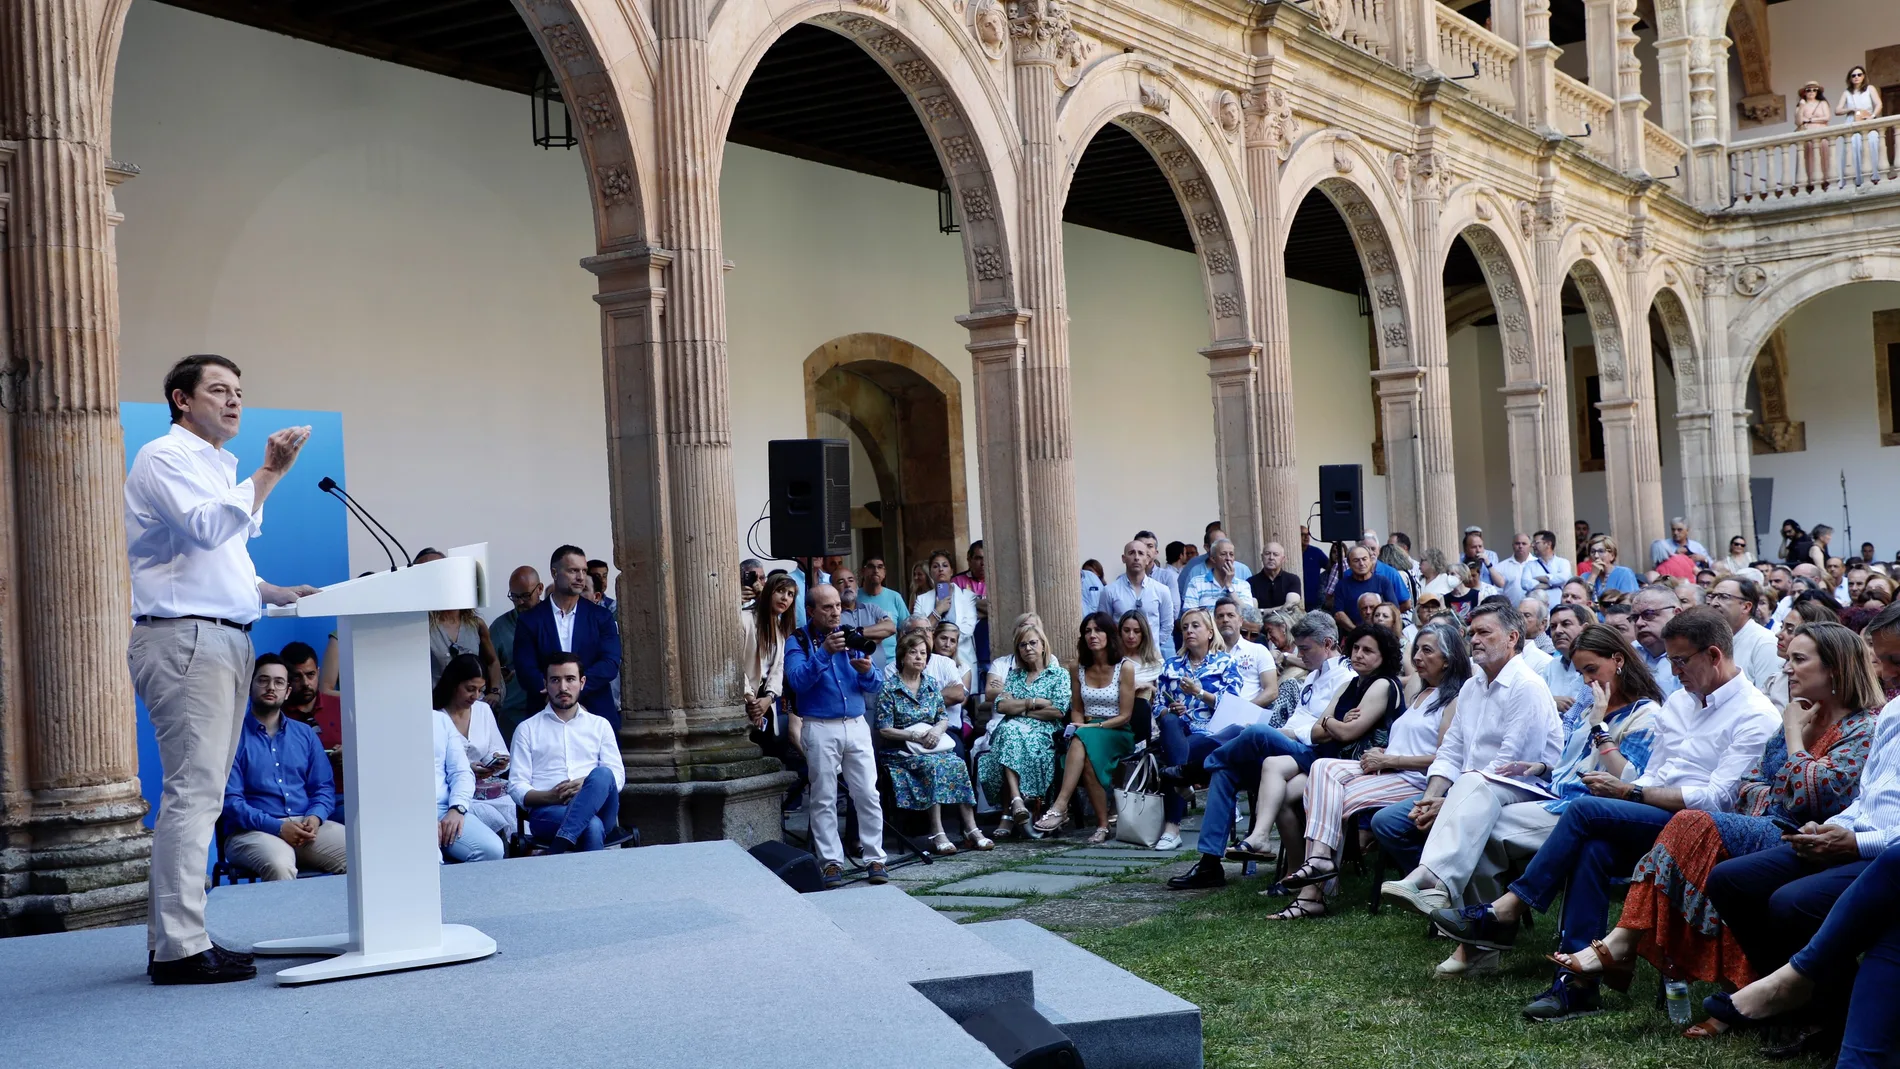 Mañueco interviene en el acto sectorial del PP en Salamanca sobre familia y políticas sociales